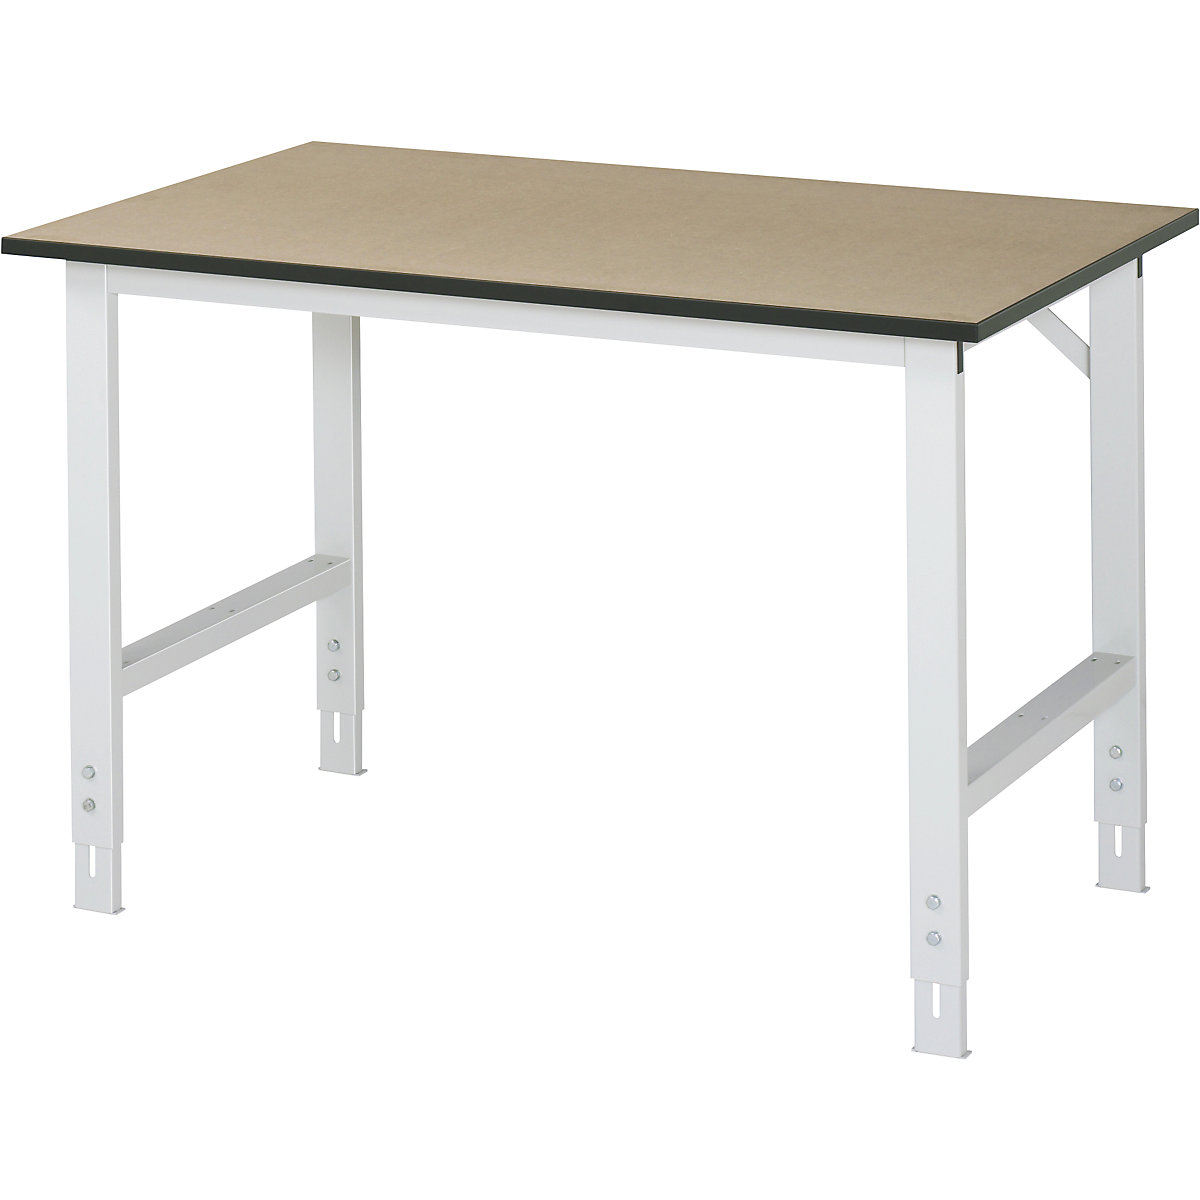 Munkaasztal, állítható magasságú – RAU, 760 – 1080 mm, MDF-lap, szé x mé 1250 x 800 mm, világosszürke-15